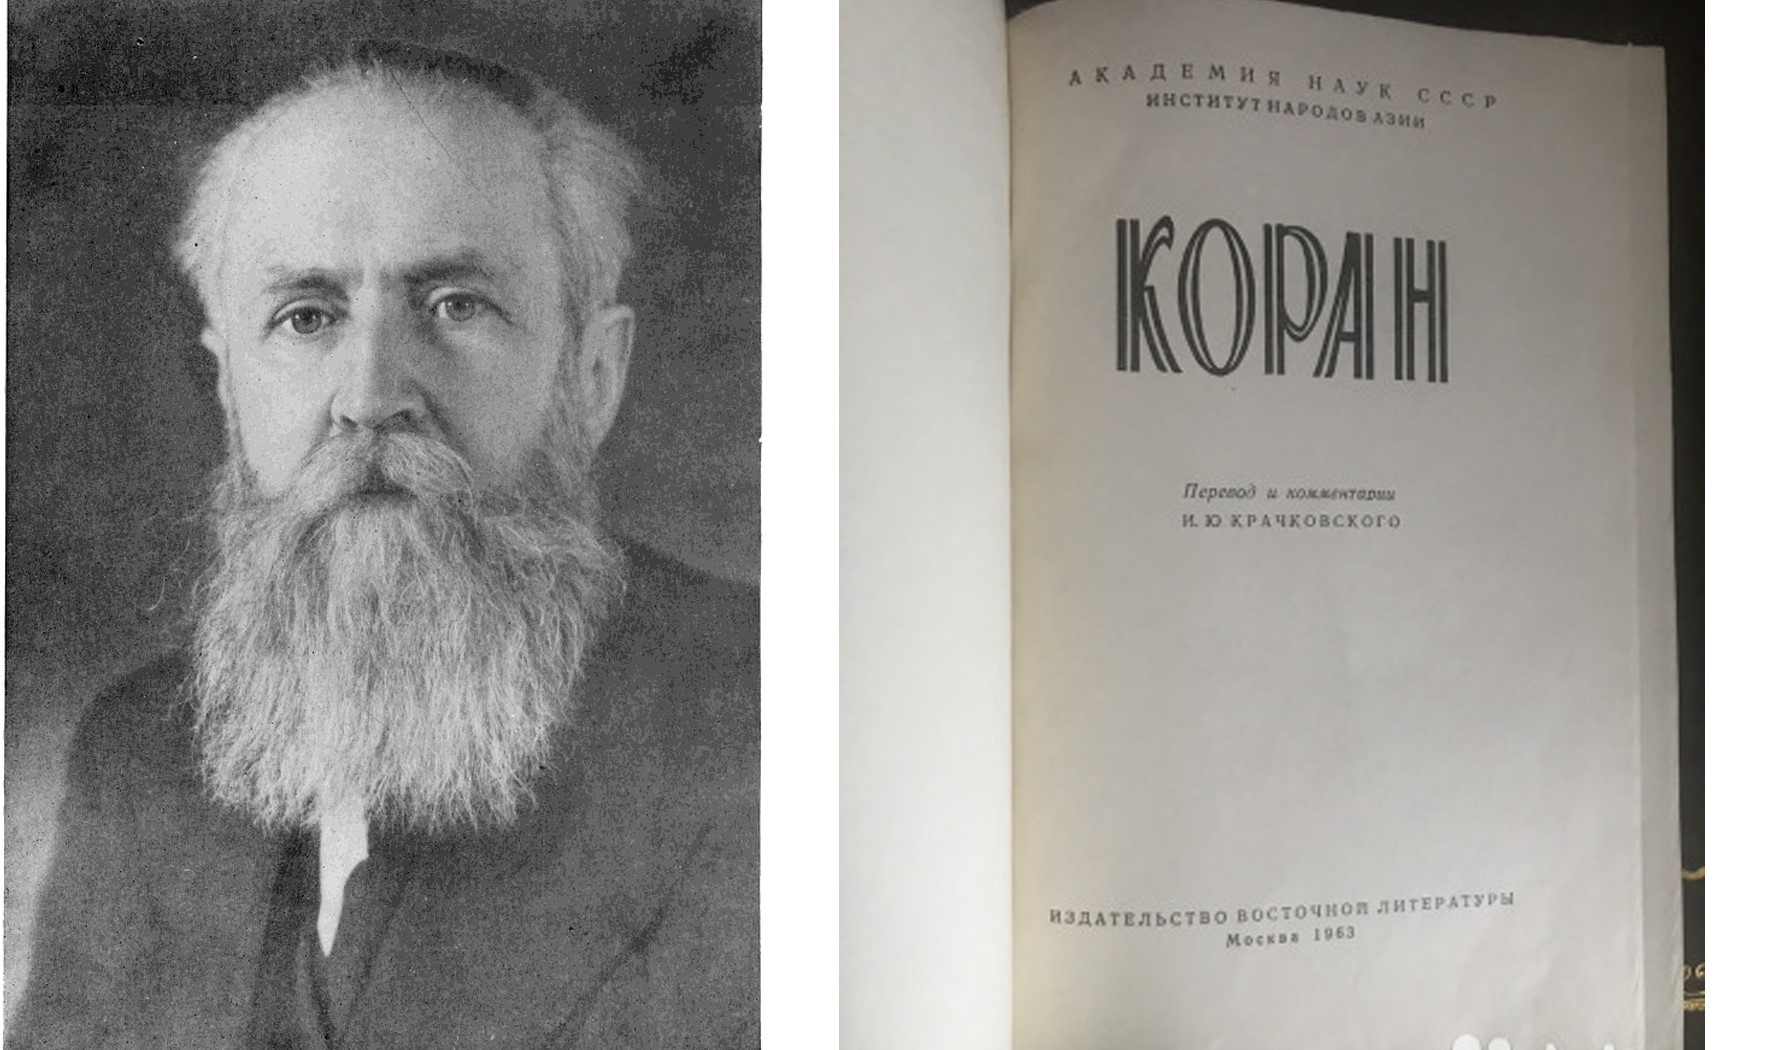 Kraçevsky'nin Kur'ân tercümesi; Nikita Kruşçev'in Komünist Parti genel sekreterliği görevinin sonuna doğru, dine karşı baskıların nispeten azaldığı bir dönemde neşredildi.